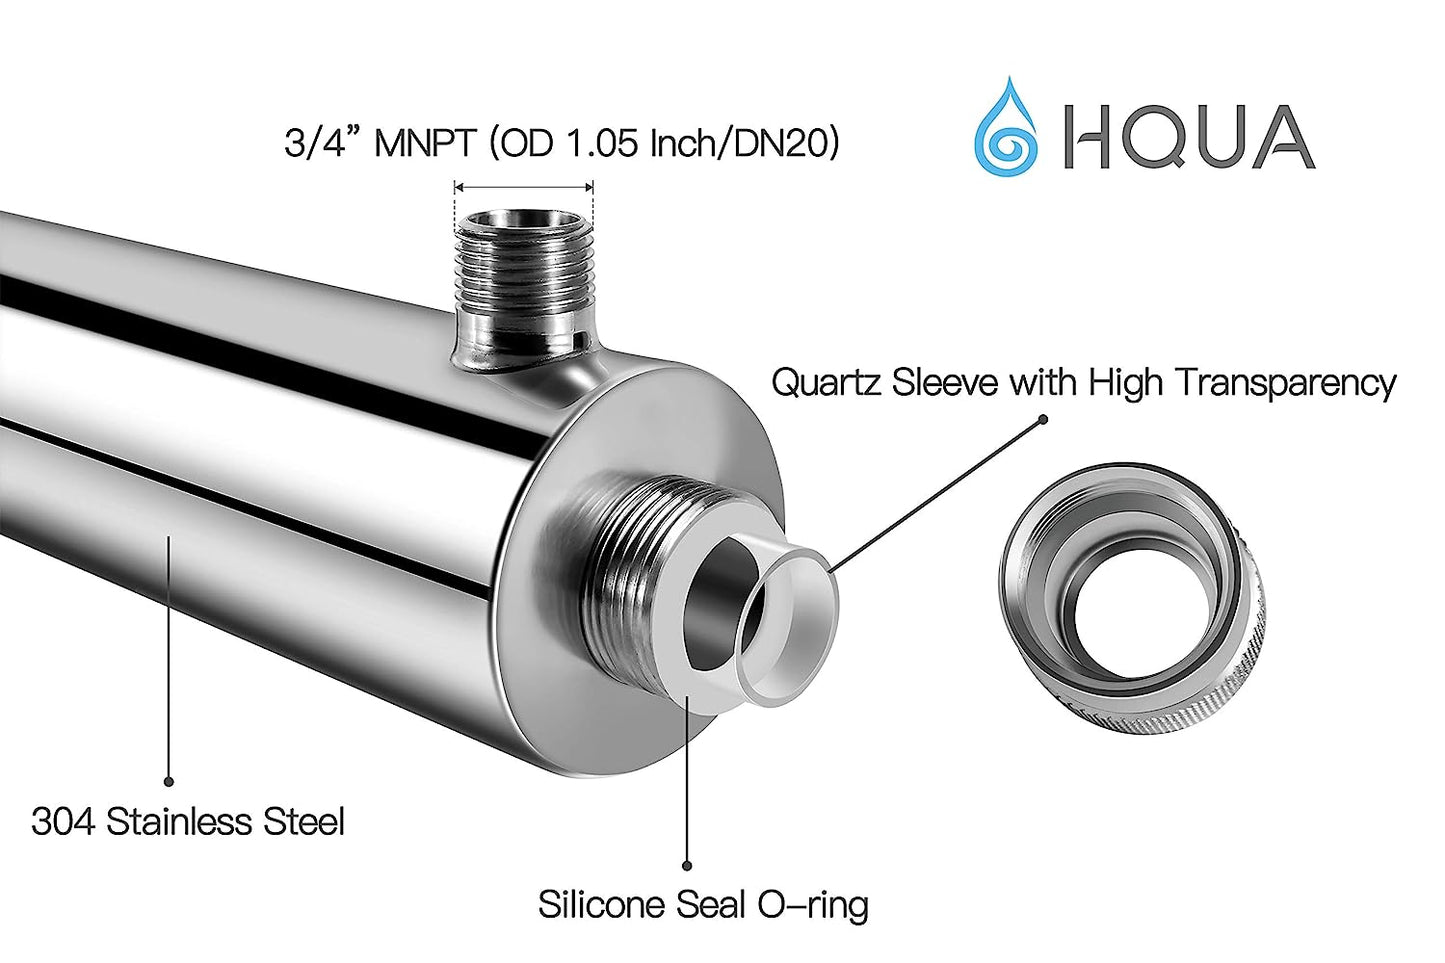 HQUA - Filtro esterilizador de purificador de agua ultravioleta OWS-12 para toda la casa, 12 GPM, 110 V, 40 W, modelo HQUA-UV-12 GPM + 1 tubo UV extra